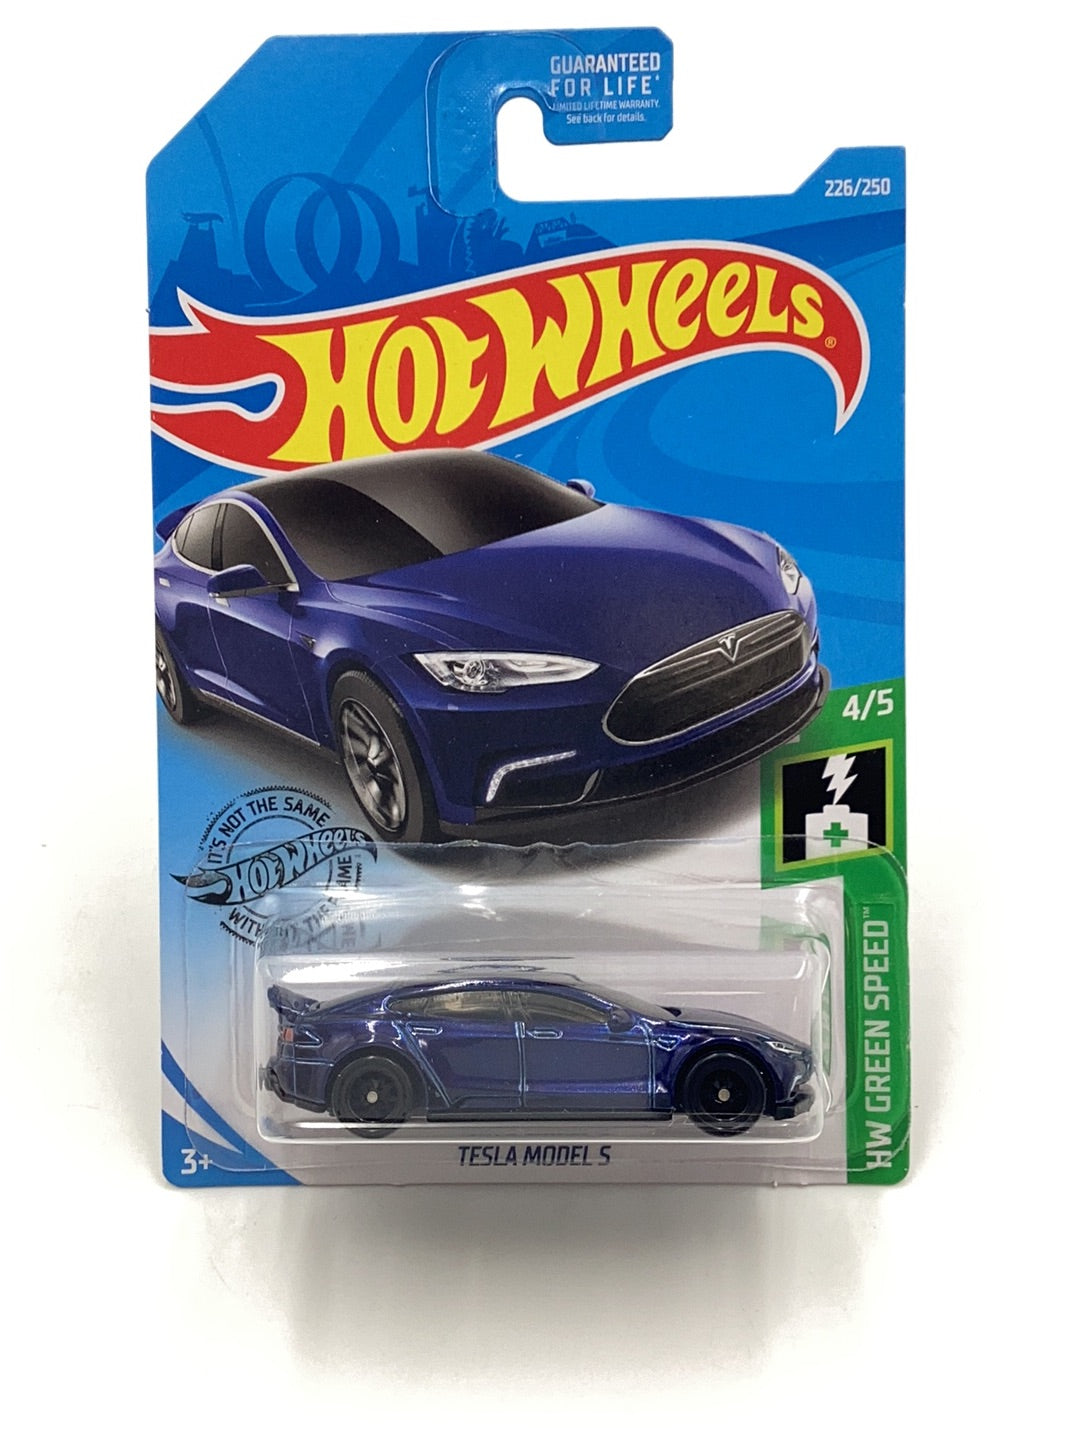 2019 hot wheels super treasure hunt #226 Tesla Model S W/Protector